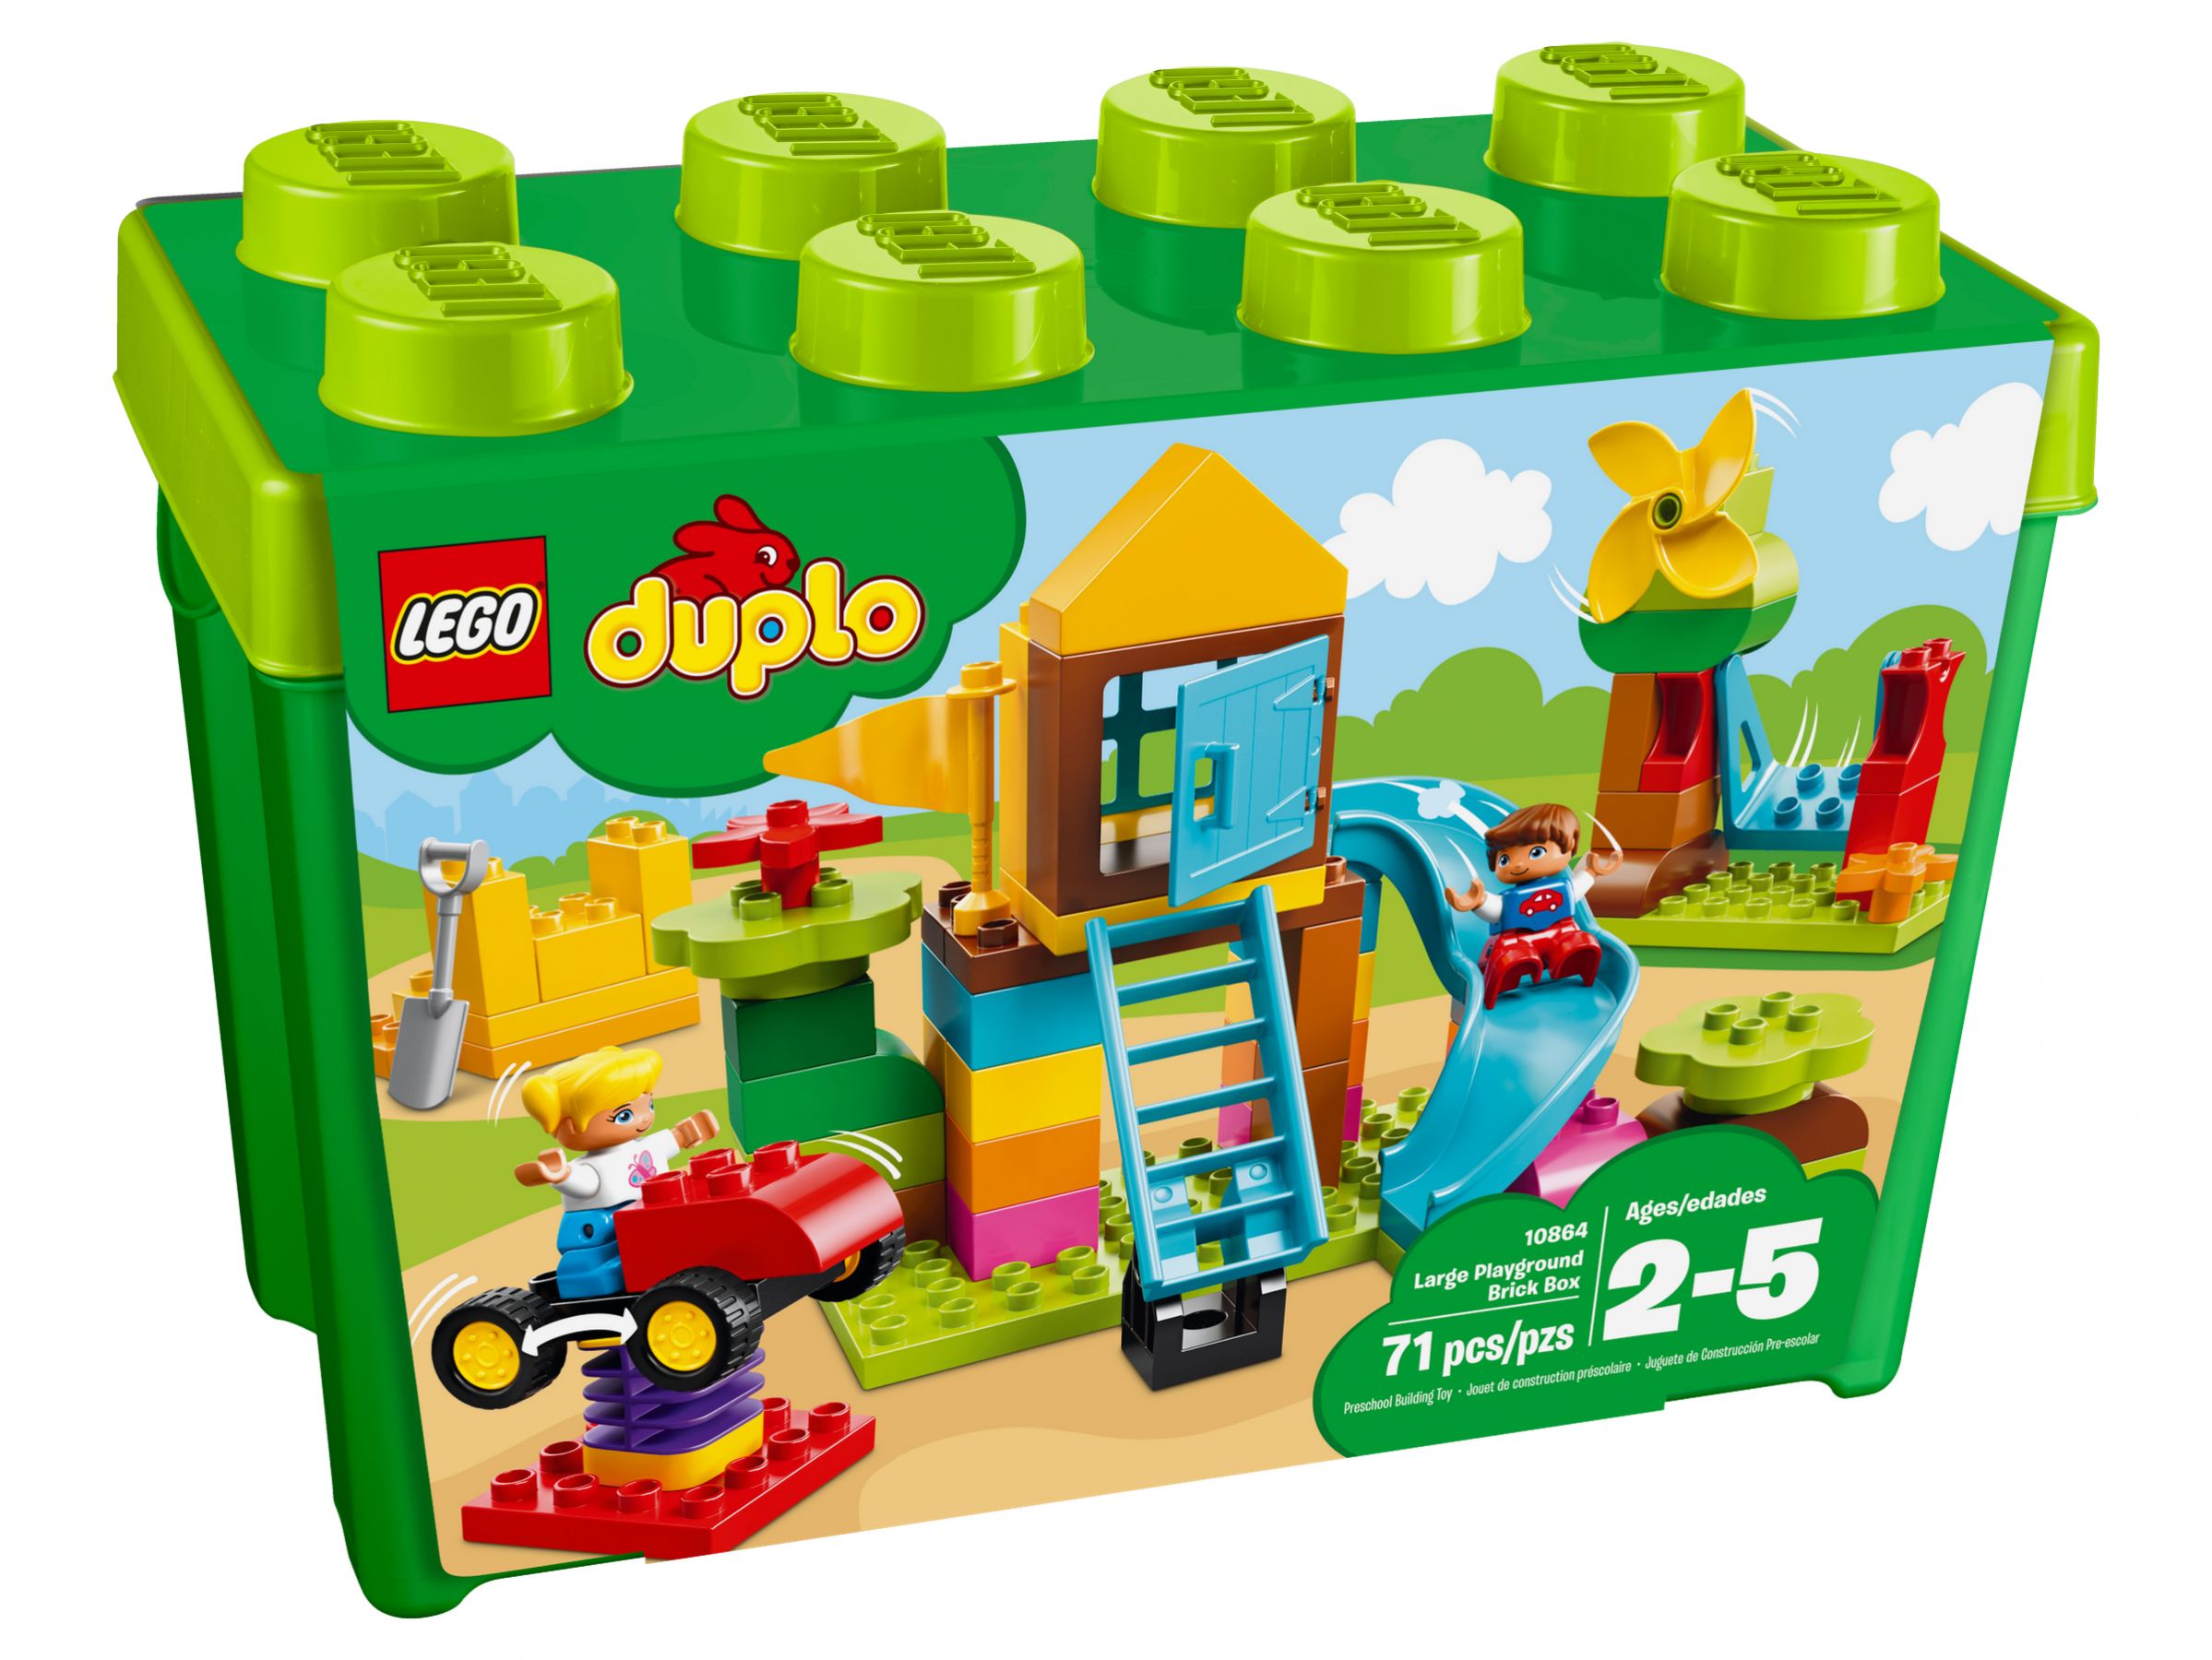 LEGO Duplo 10864 Steinebox mit großem Spielplatz LEGO_10864_alt1.jpg